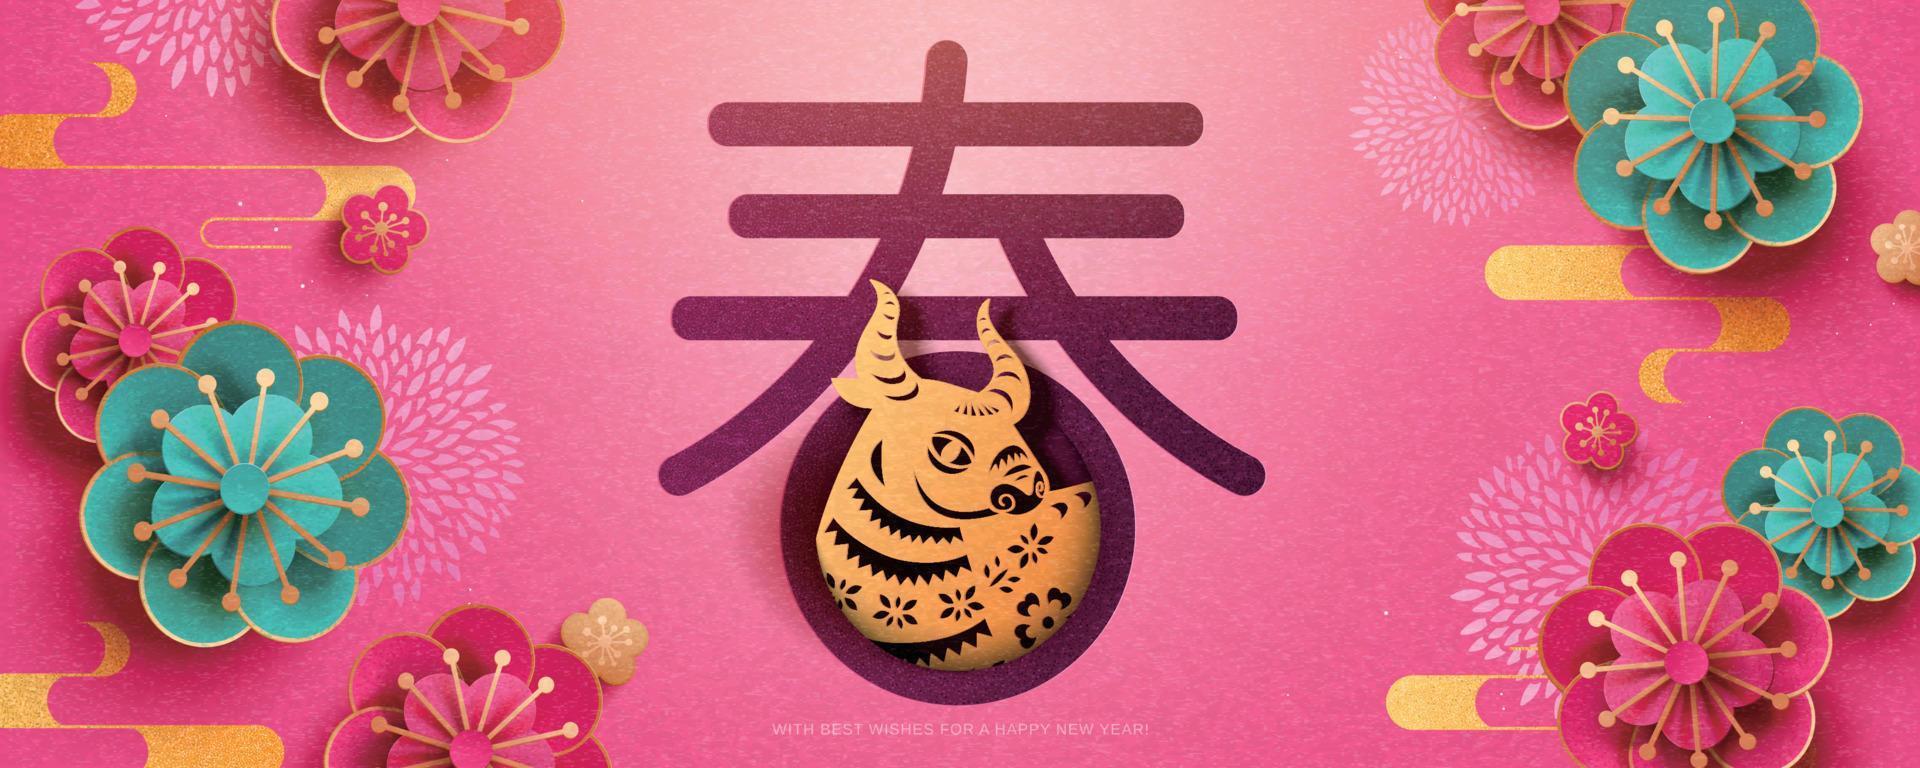 Chinesisch Neu Jahr Banner mit exquisit Papier Schneiden Blume und Stier auf cerise Rosa Hintergrund, Chinesisch Übersetzung, Frühling vektor